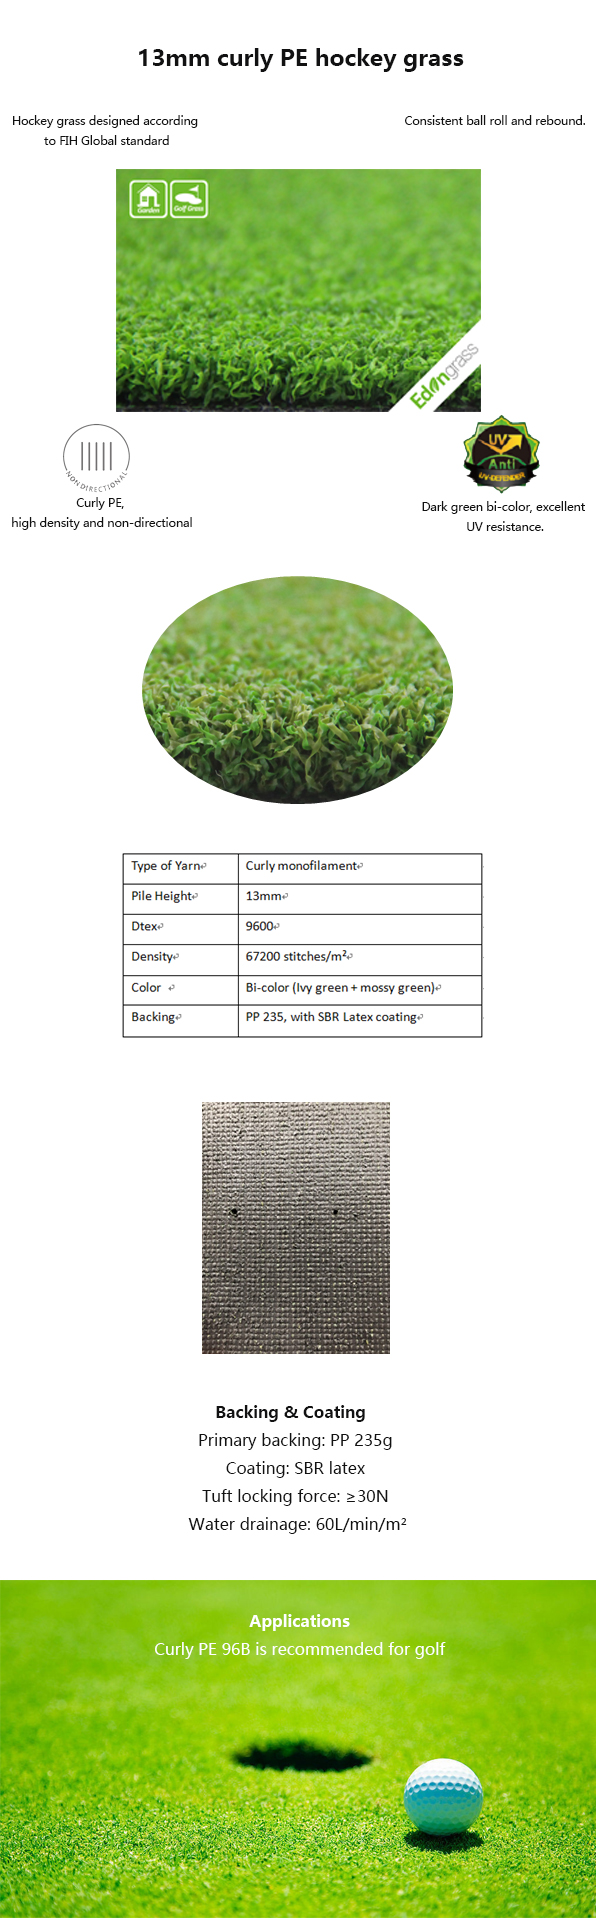 Altezza artificiale verde mettente dell'erba 13m di golf sintetico del prato inglese resistente all'uso 0